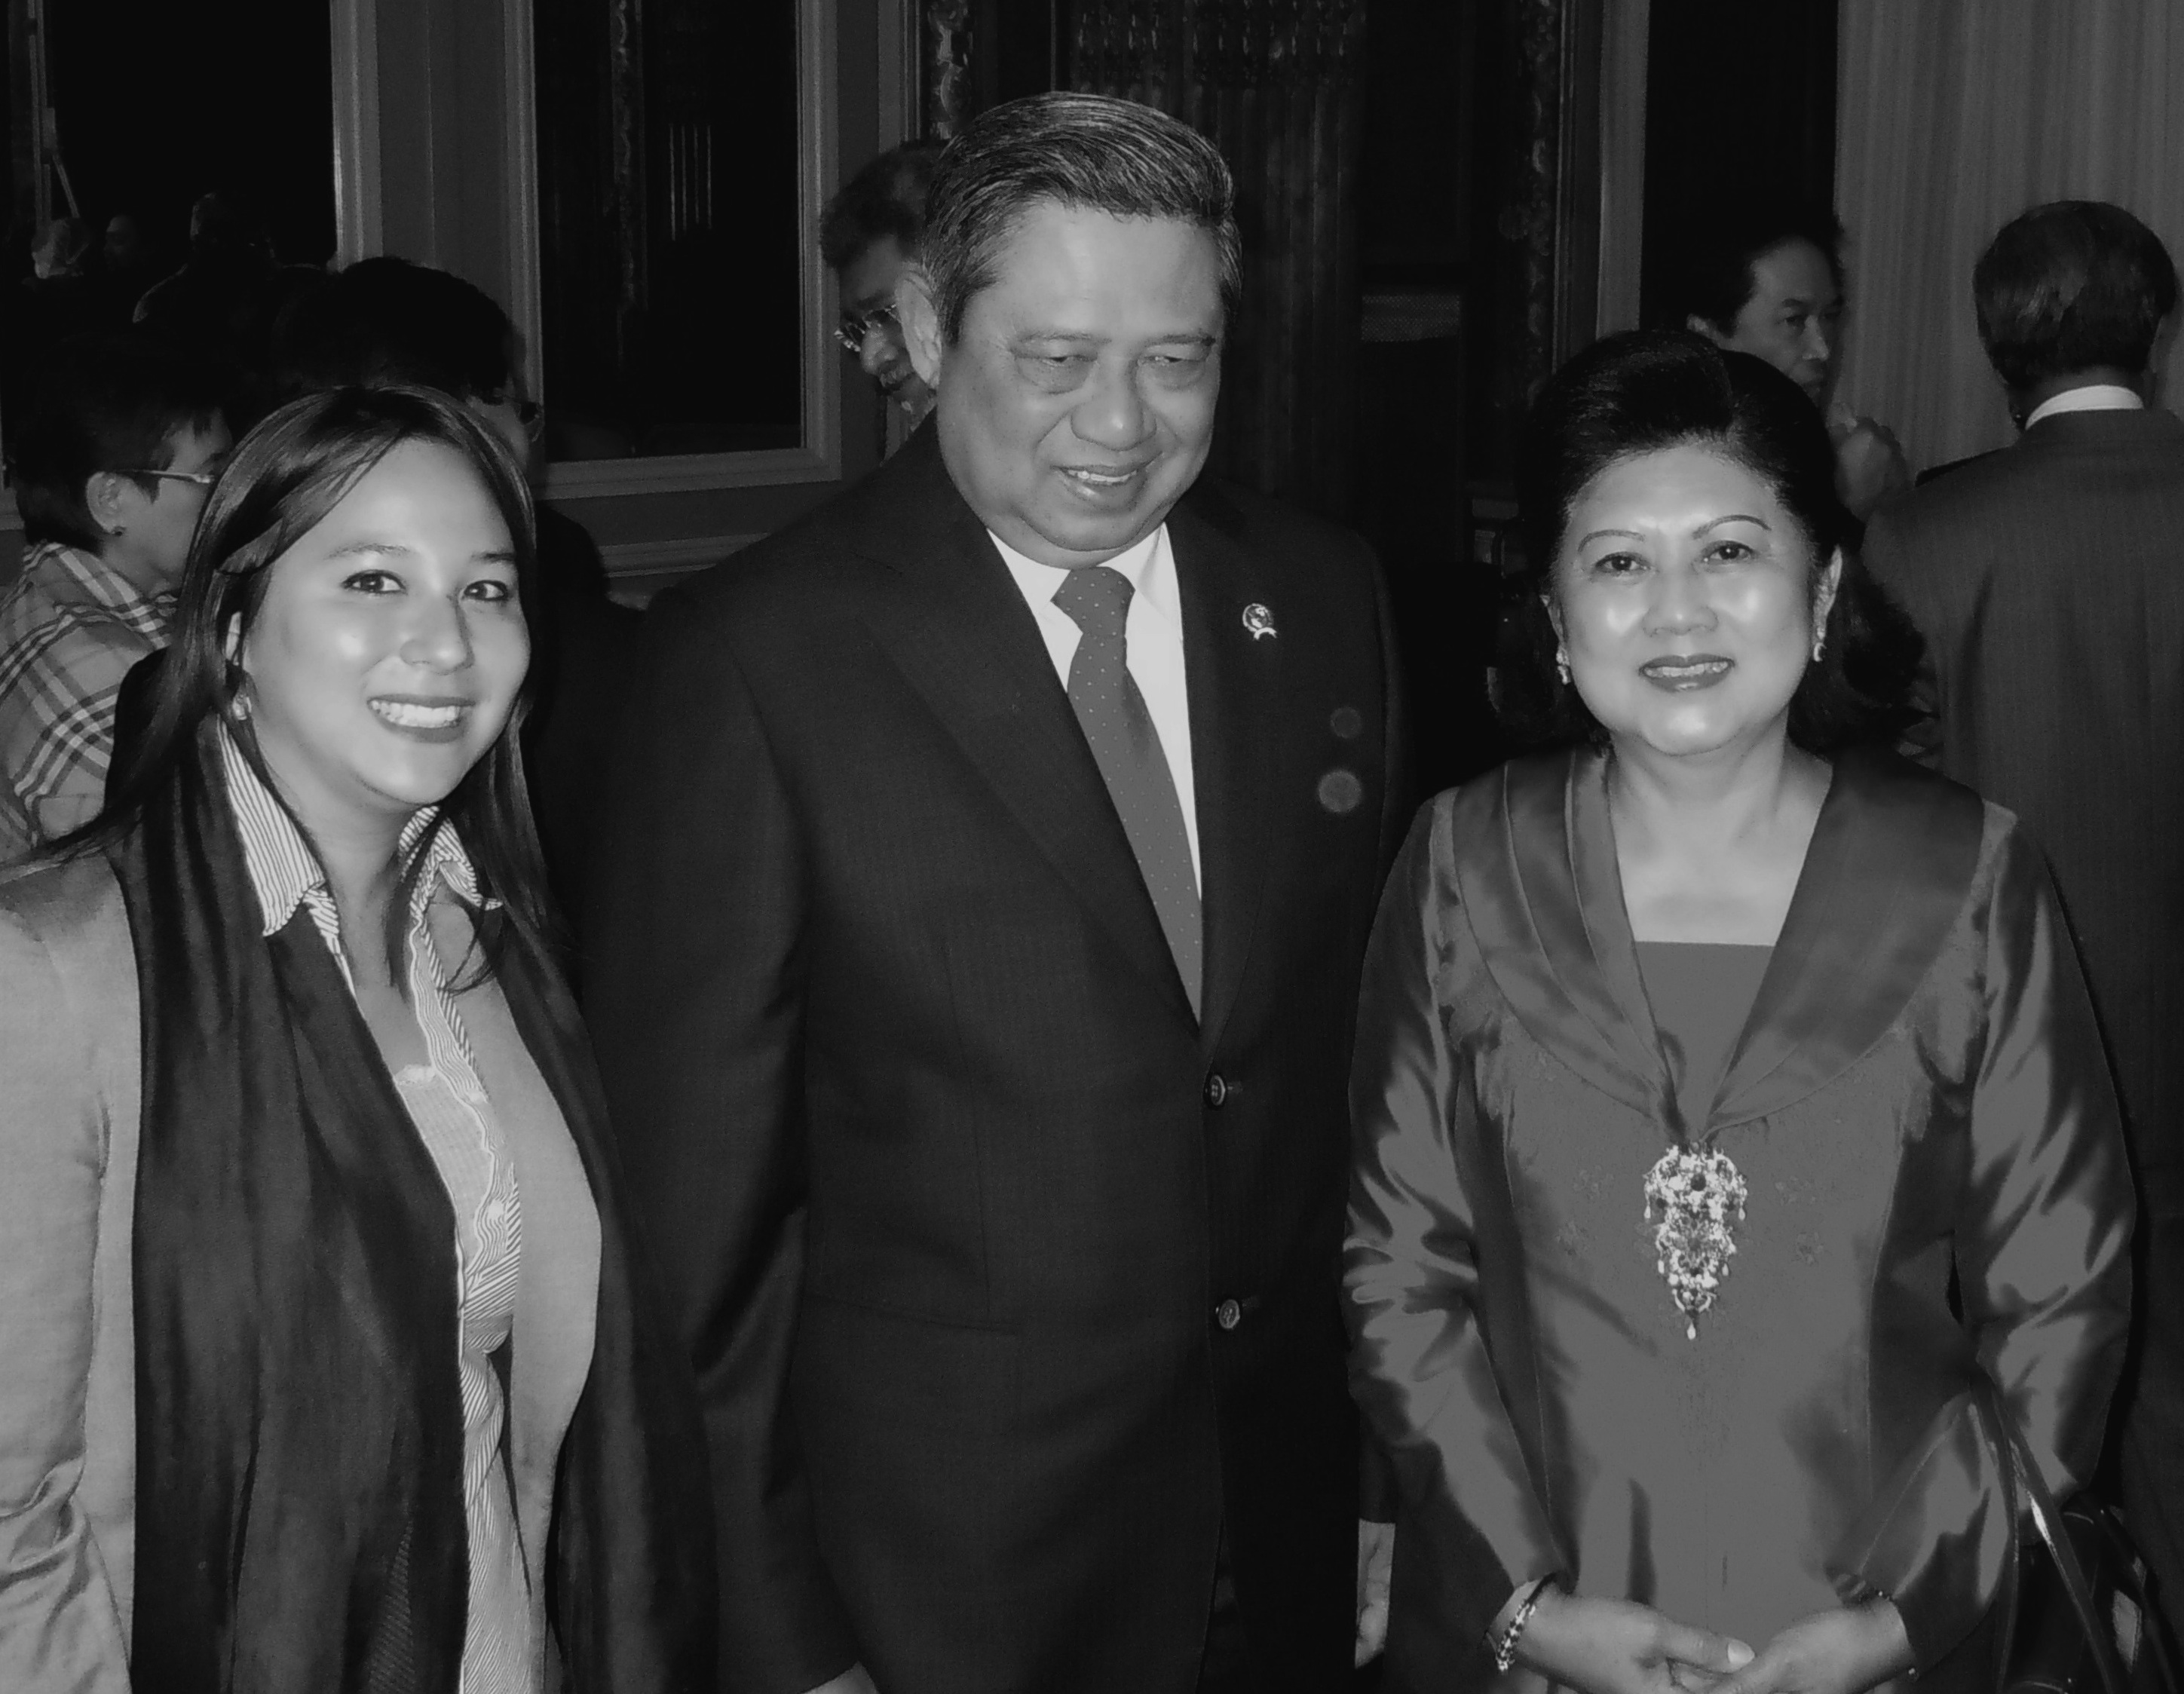 stephanie djawa SBY yudhoyono président 